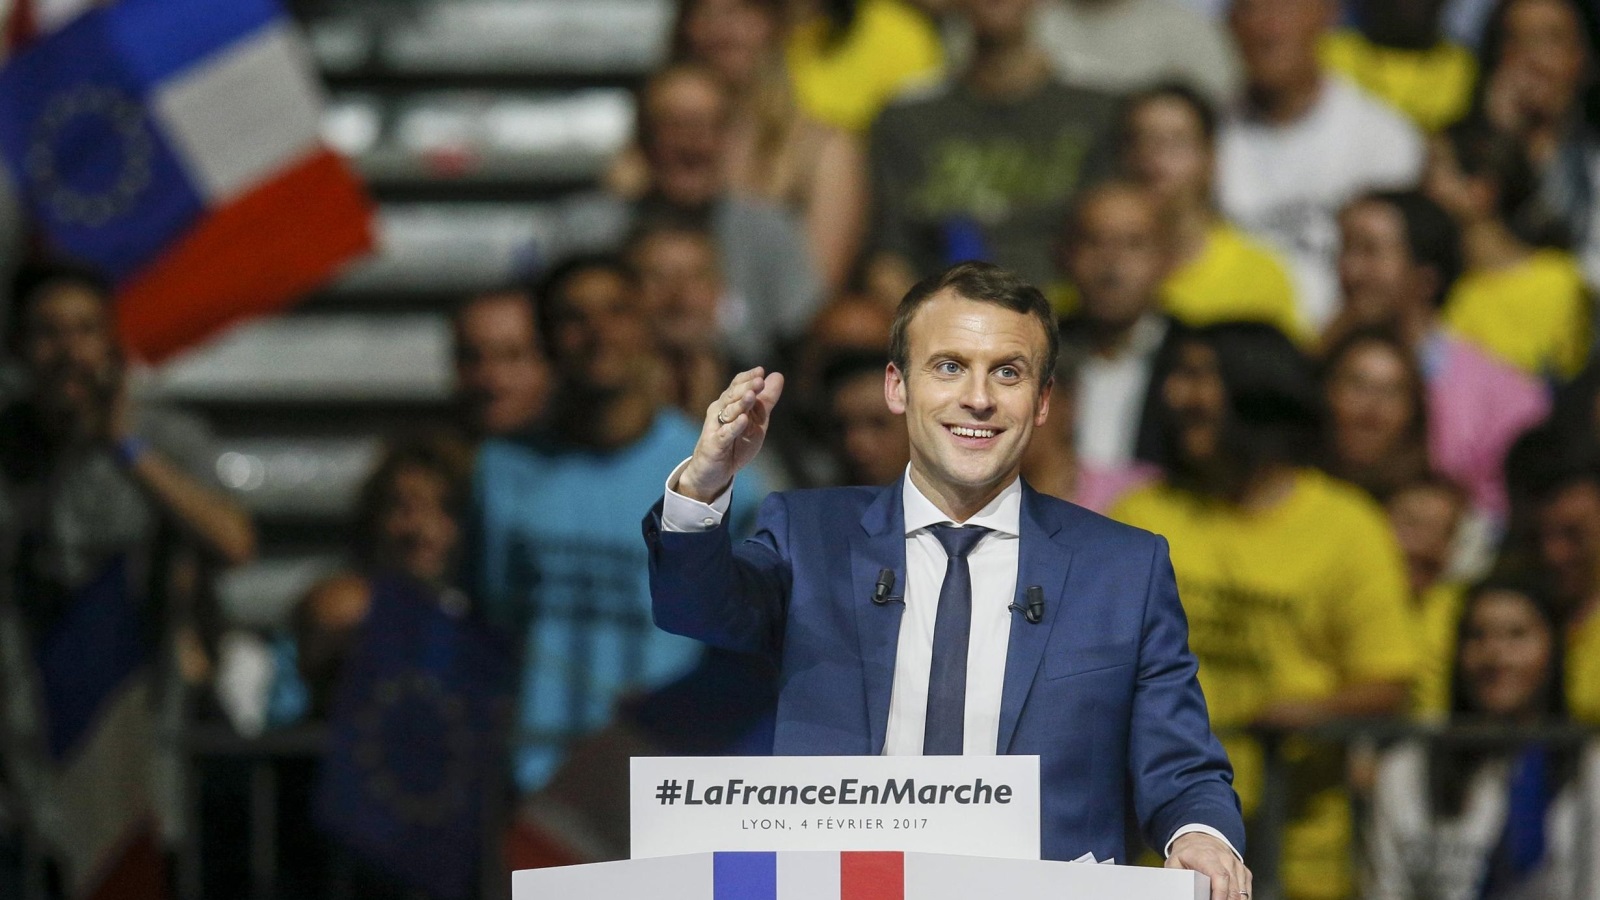 ماكرون سيتفوق على لوبان في الجولة الثانية من الانتخابات الفرنسية وفق استطلاعات الرأي (رويترز)